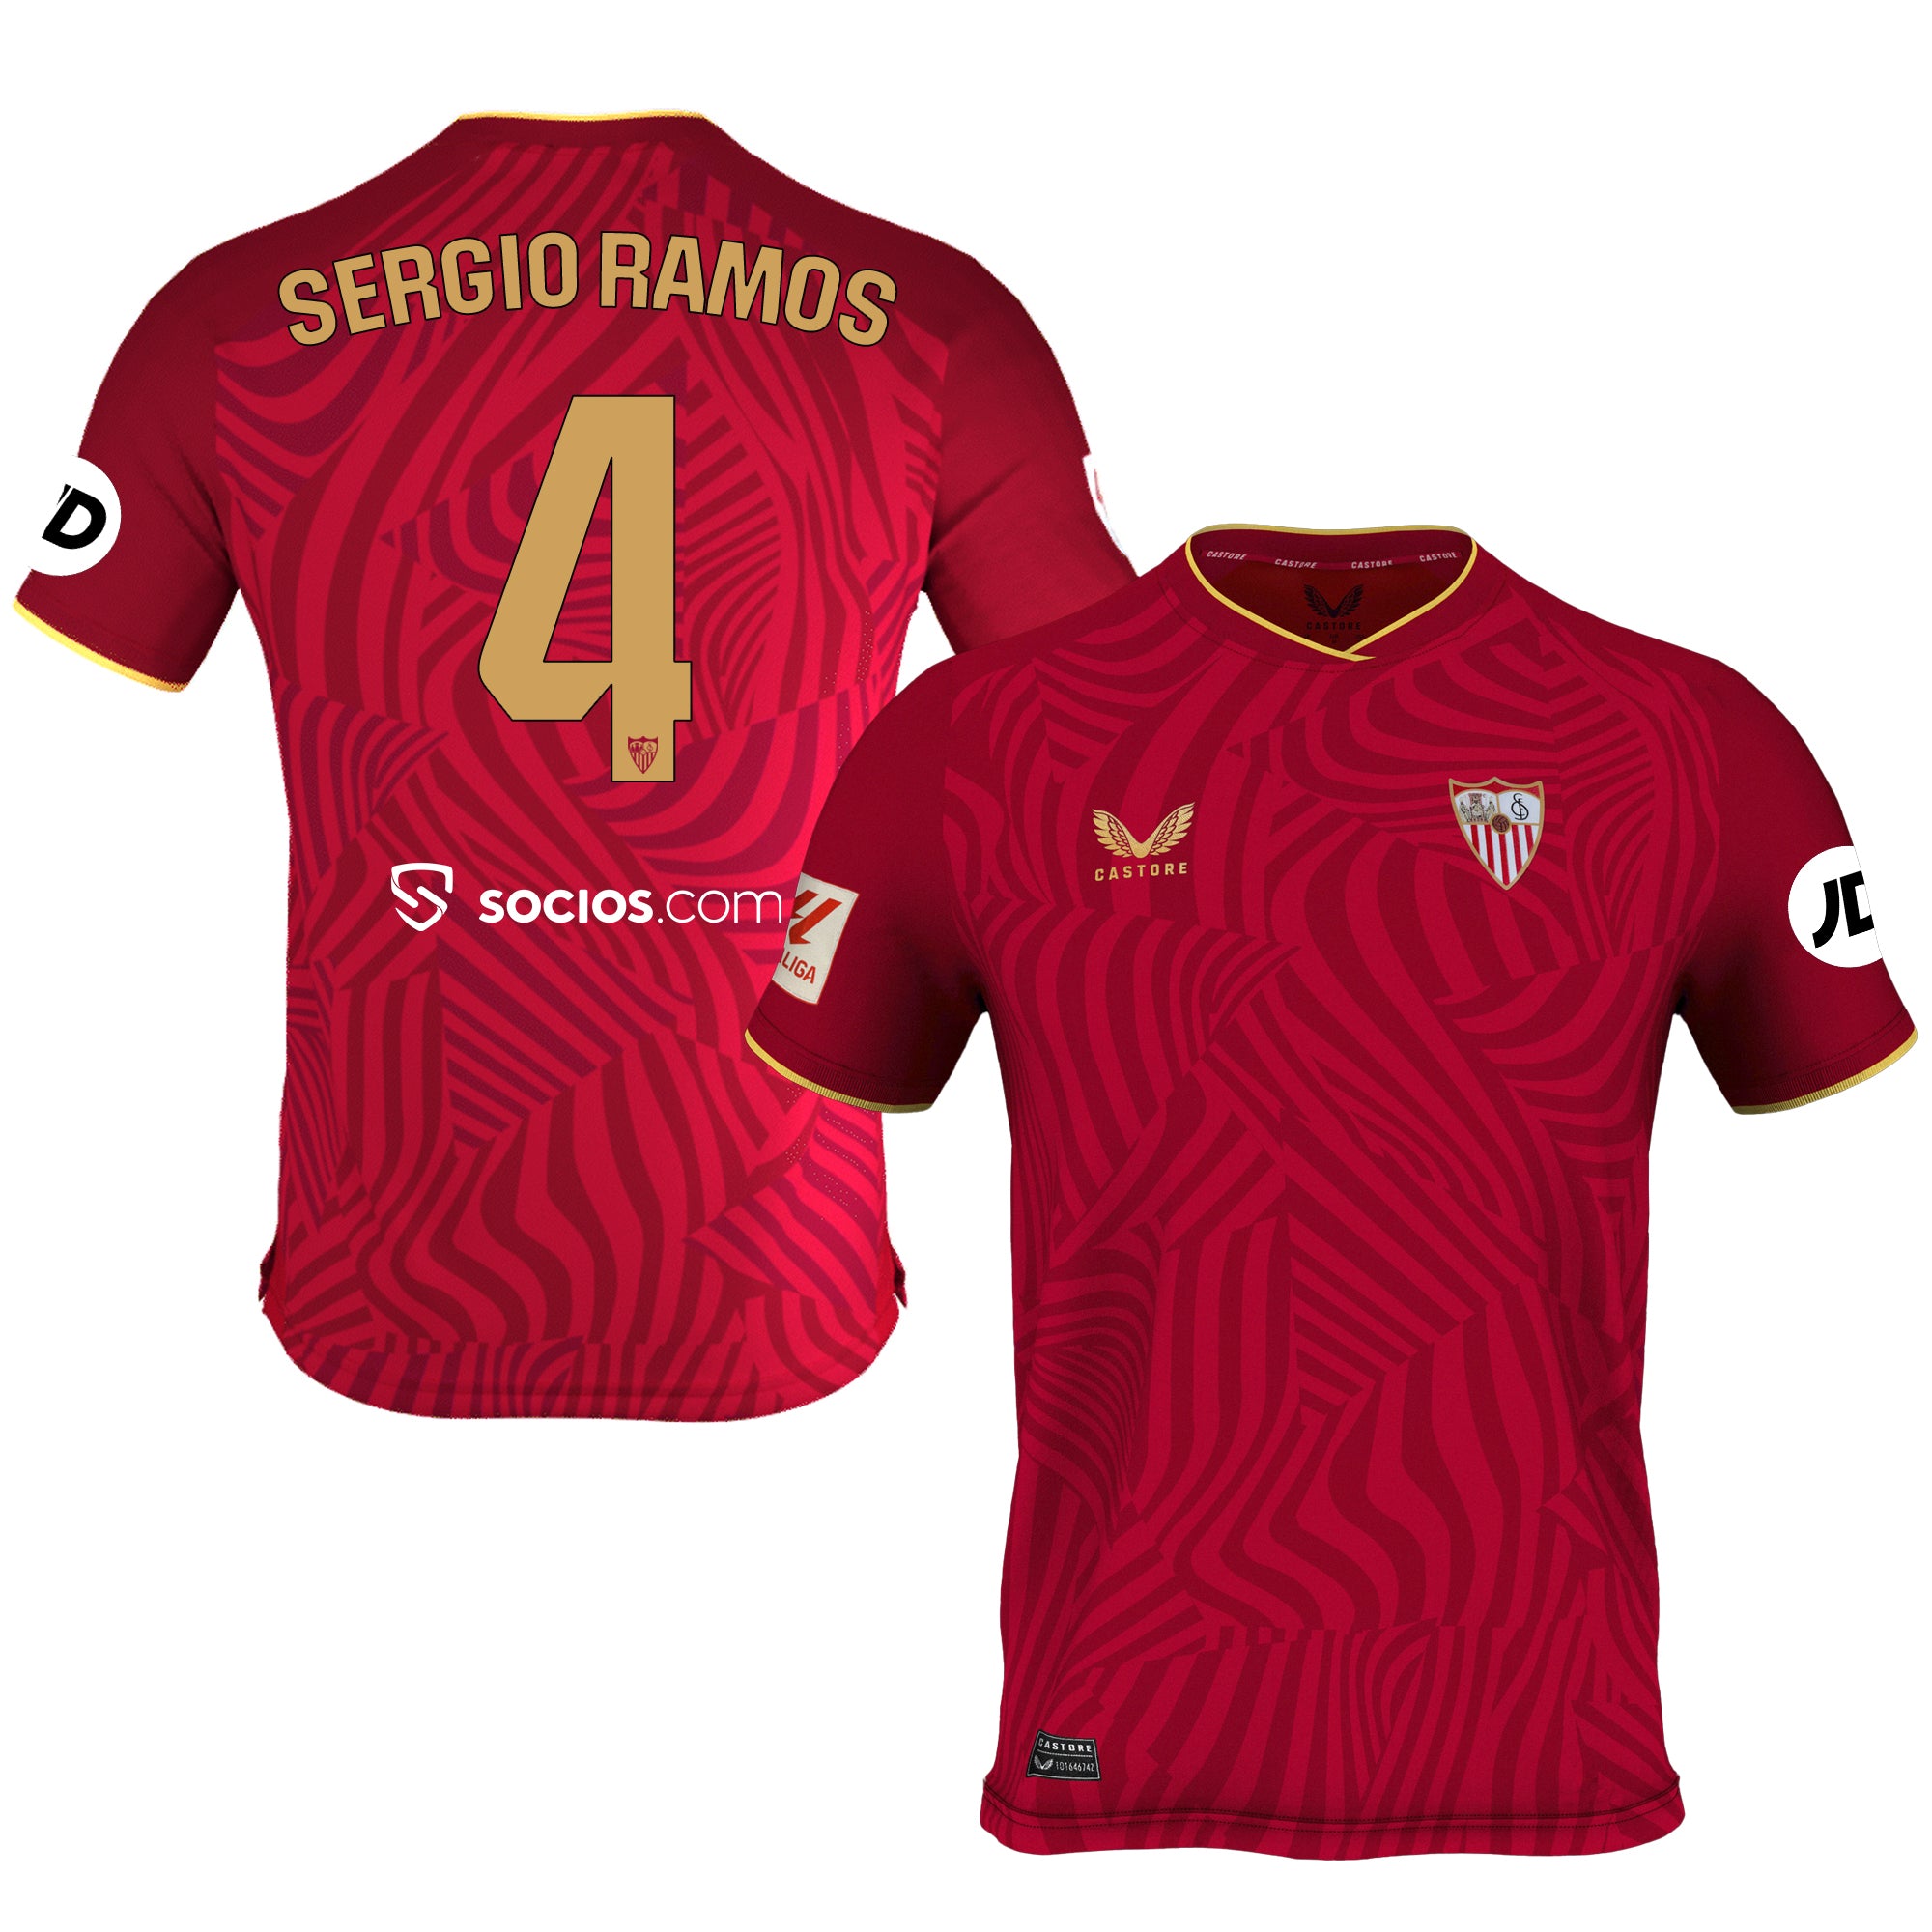 Camiseta 2ª Sevilla FC 23/24 Dorsal 4 y serigrafía Sergio Ramos hombre